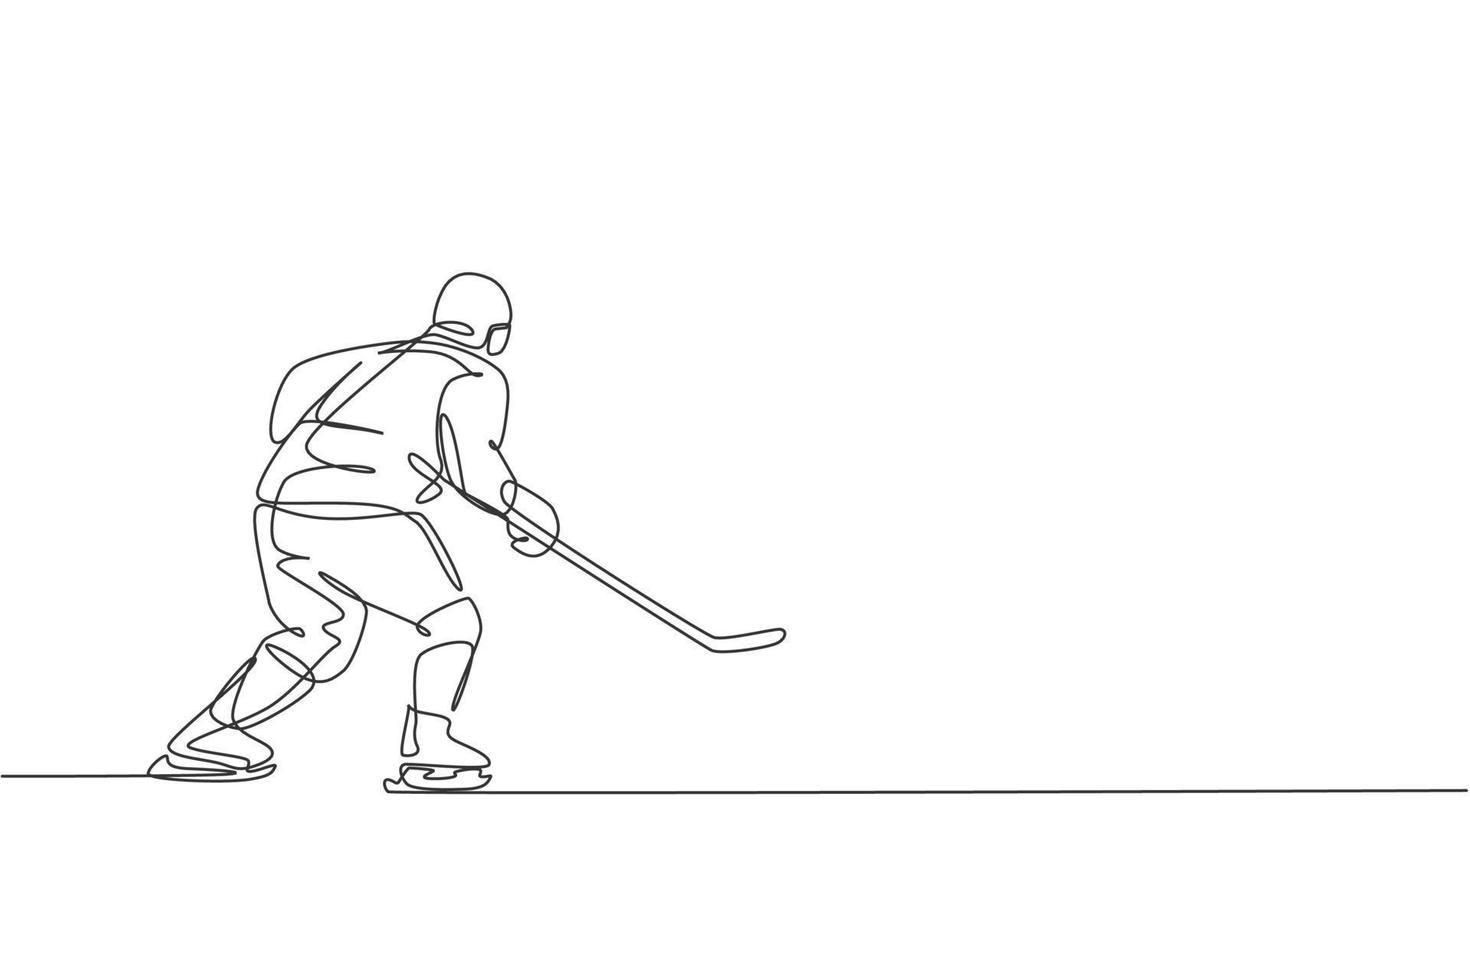 enda kontinuerlig linjeteckning av ung professionell ishockeyspelare som håller puckskottet och försvaret på isbanan. extrem vintersport koncept. trendiga en rad rita design vektorillustration vektor